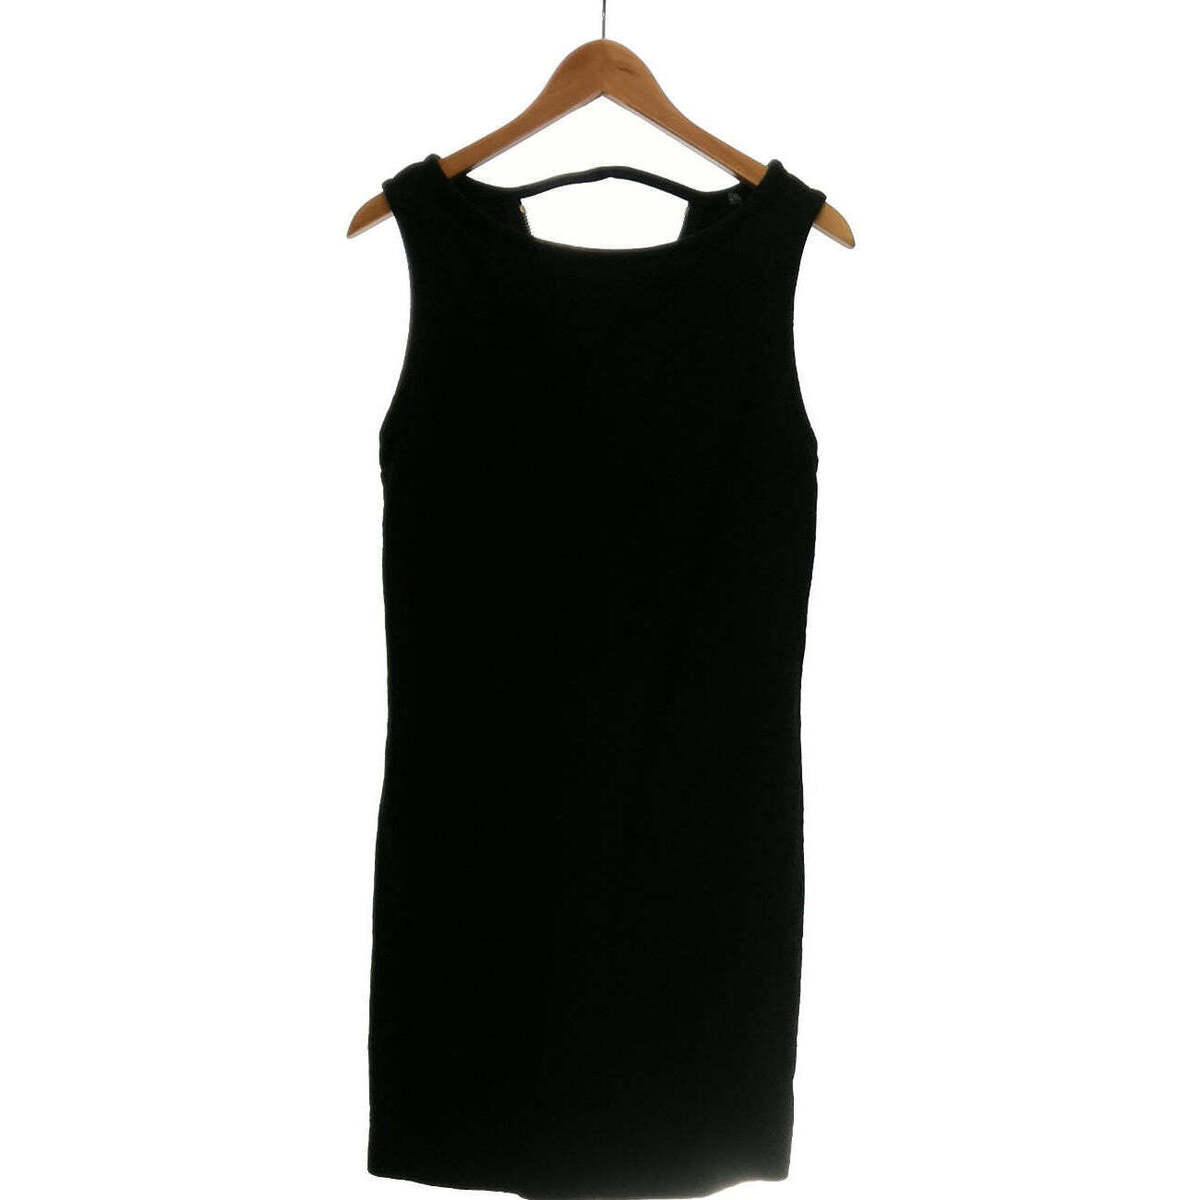 Vêtements Femme Livraison gratuite* et Retour offert robe courte  38 - T2 - M Noir Noir